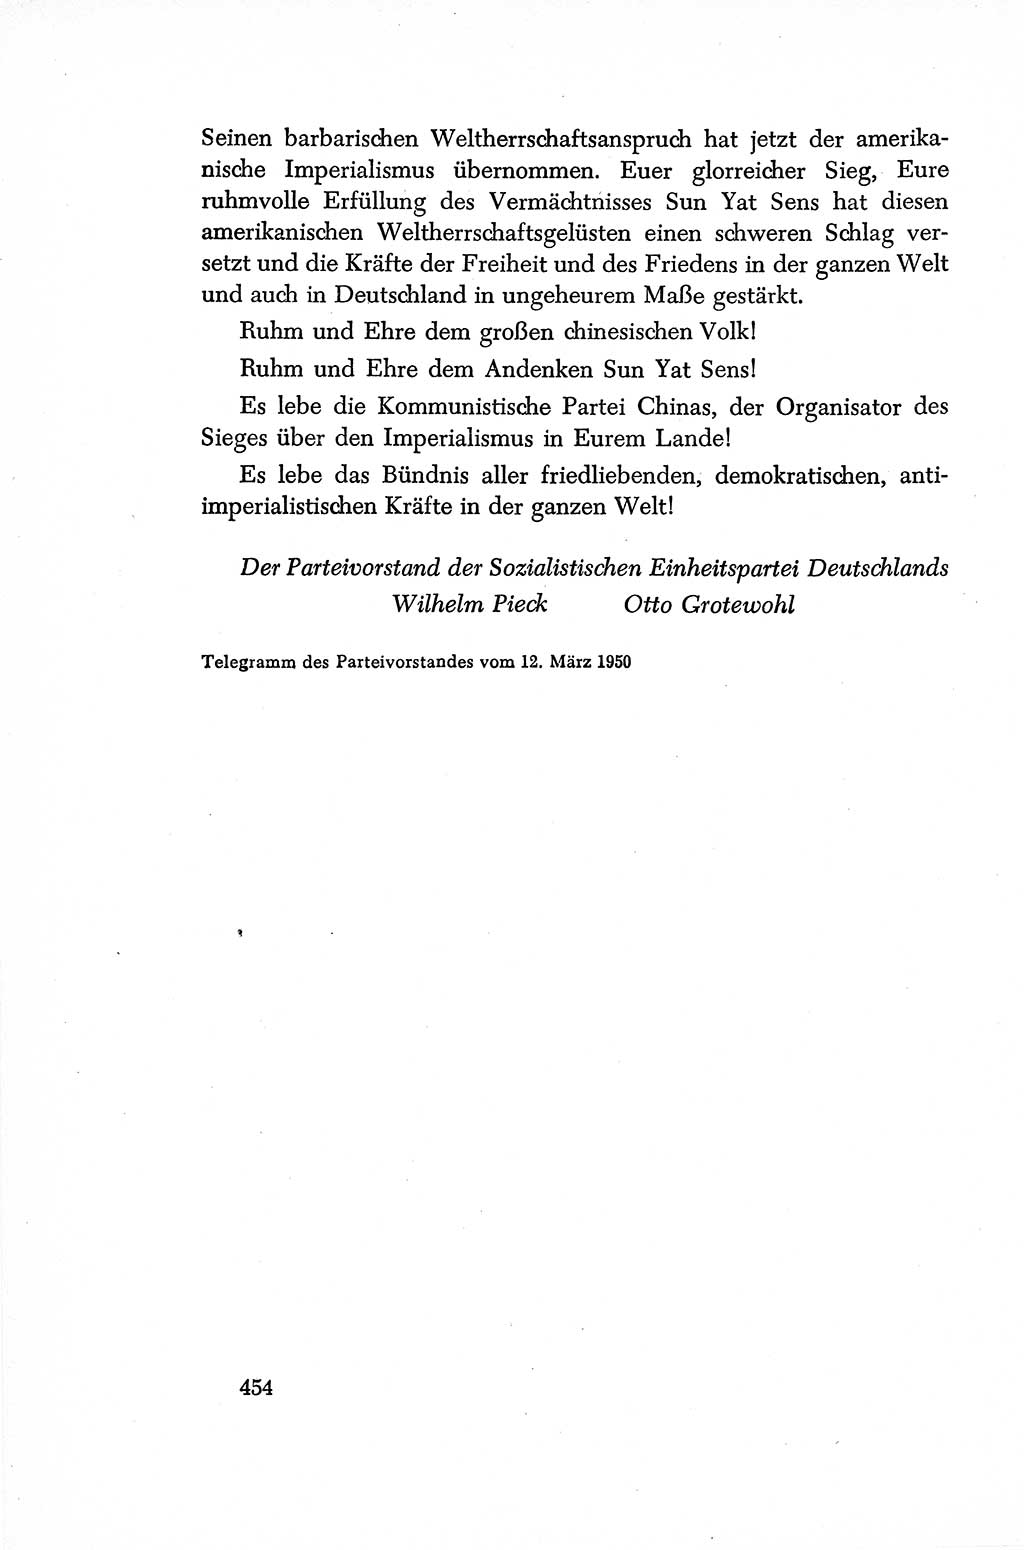 Dokumente der Sozialistischen Einheitspartei Deutschlands (SED) [Sowjetische Besatzungszone (SBZ) Deutschlands/Deutsche Demokratische Republik (DDR)] 1948-1950, Seite 454 (Dok. SED SBZ Dtl. DDR 1948-1950, S. 454)